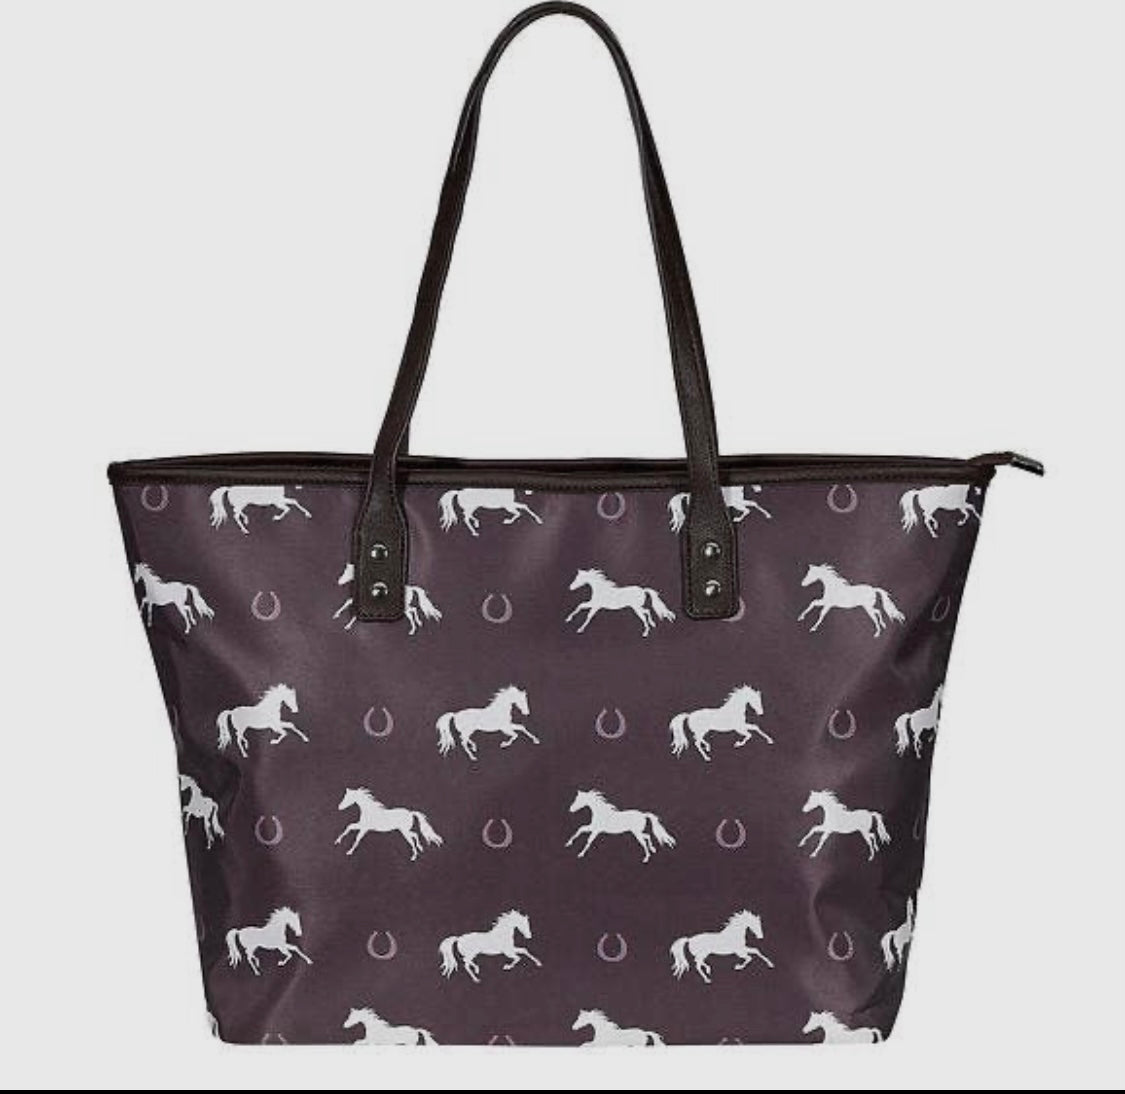 Horses & Horseshoes Handbag